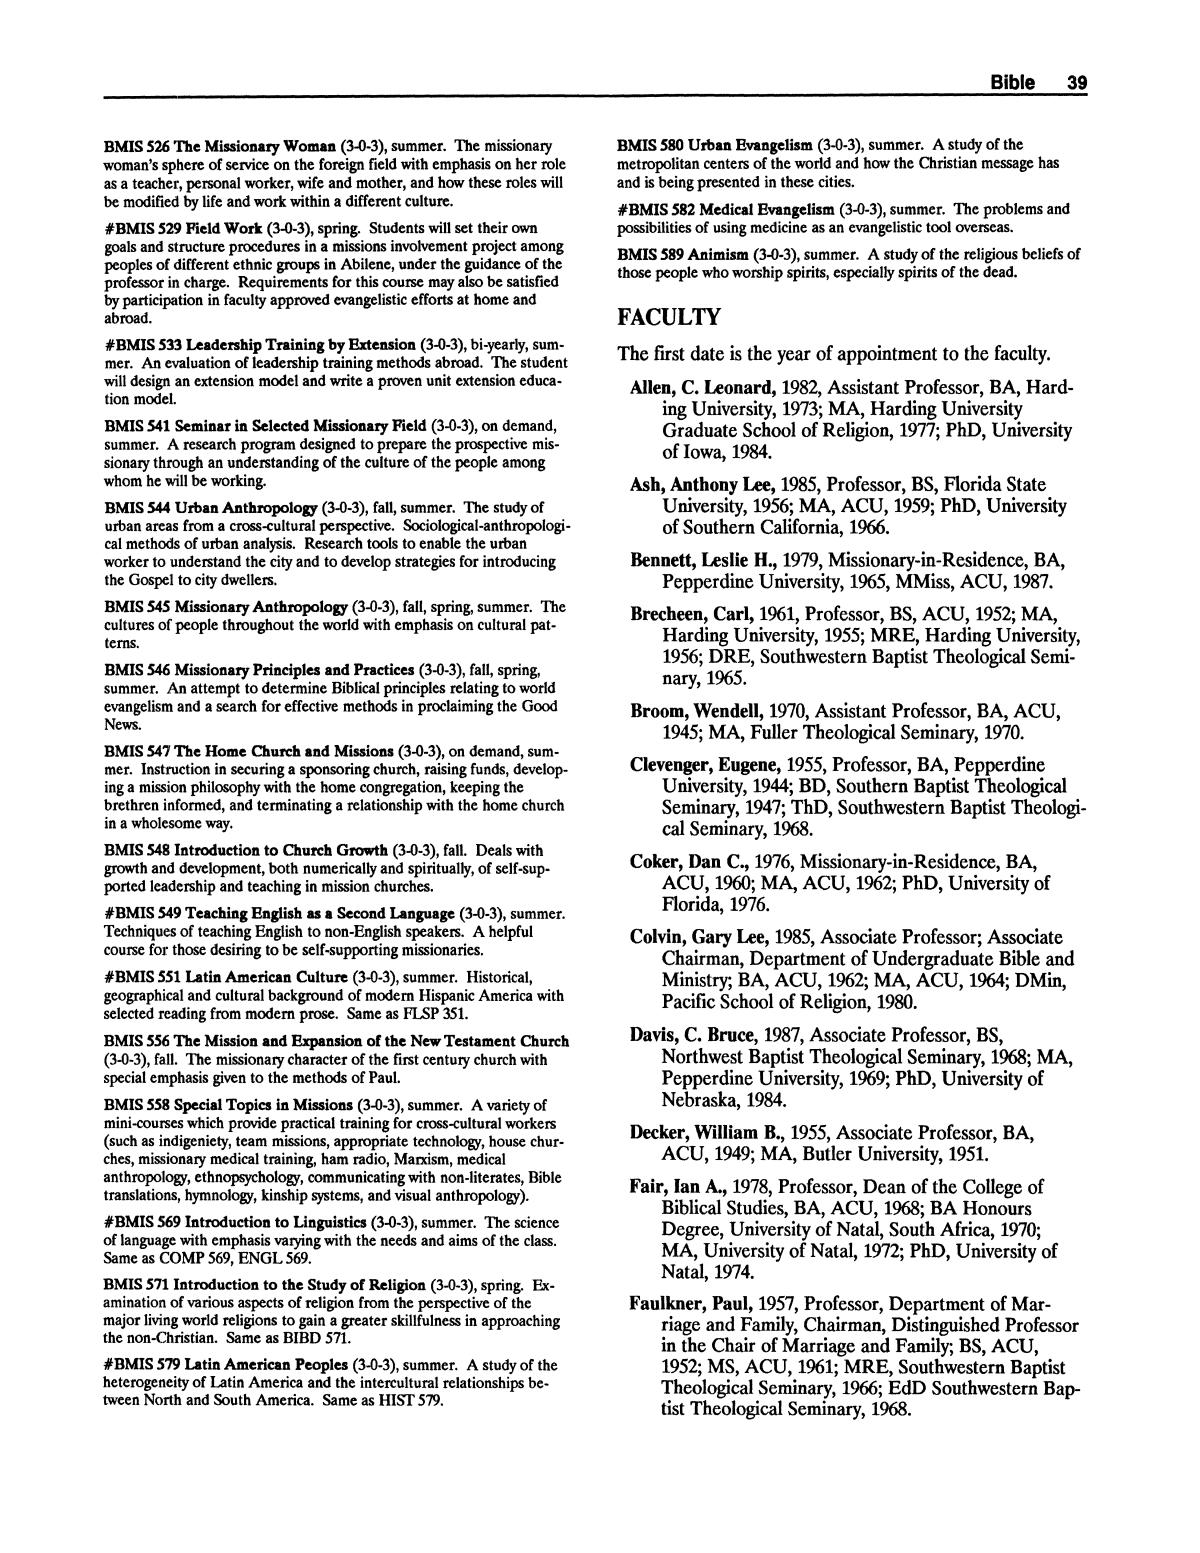 Catalog of Abilene Christian University, 1988-1989
                                                
                                                    39
                                                